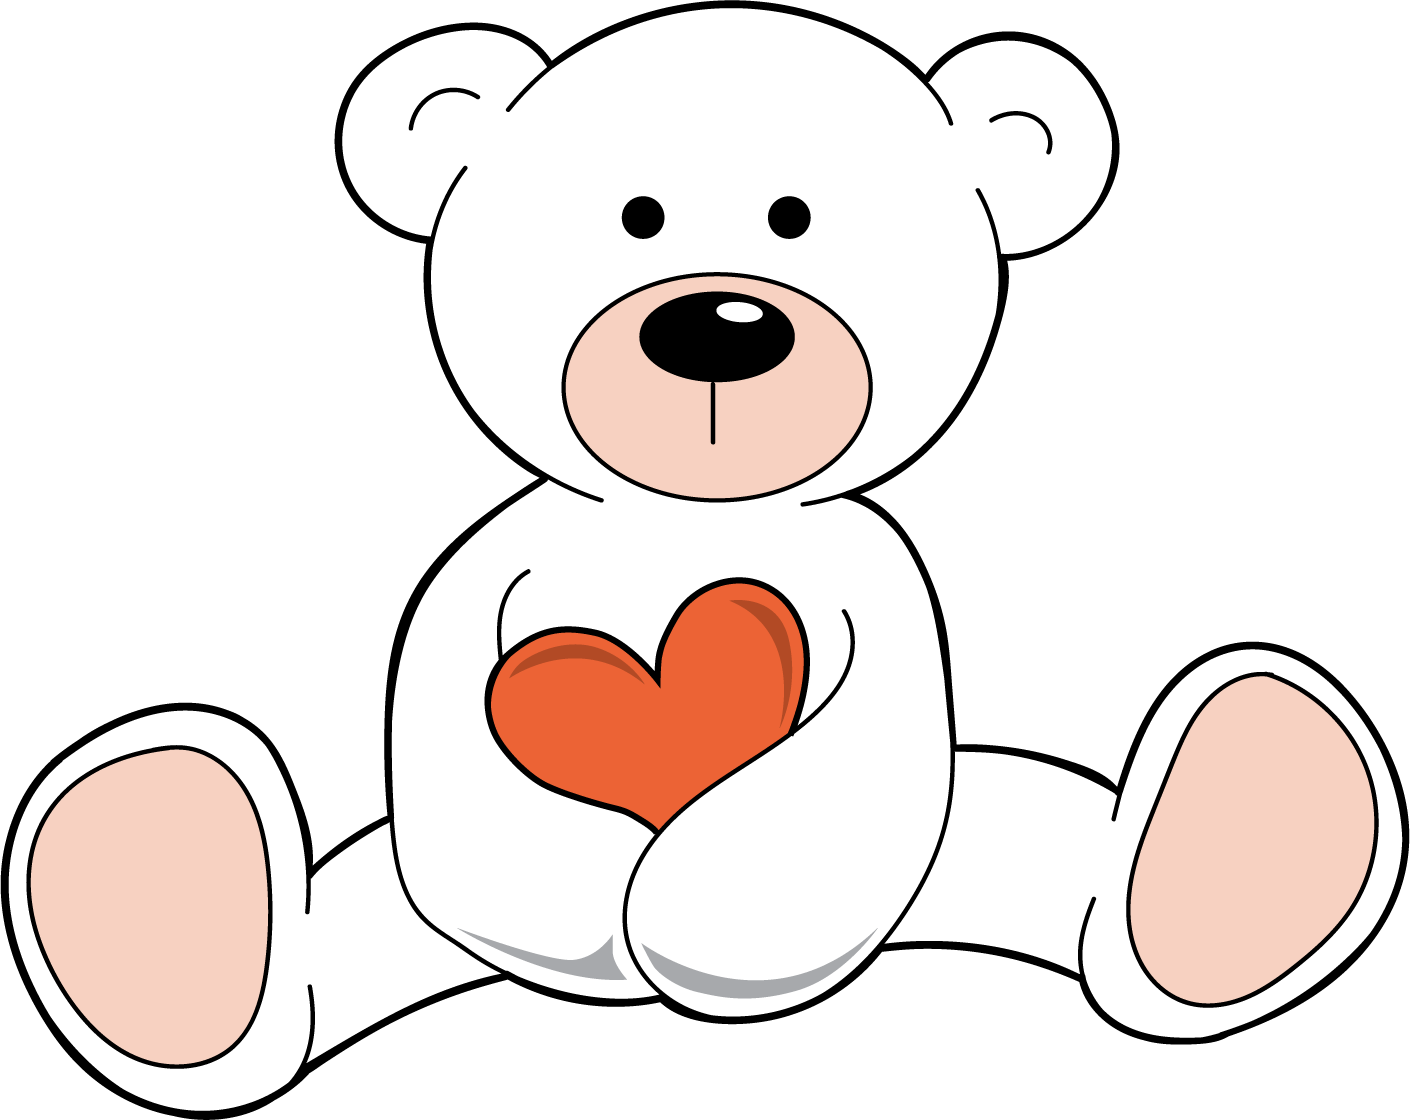 White teddy bear holding red heart.